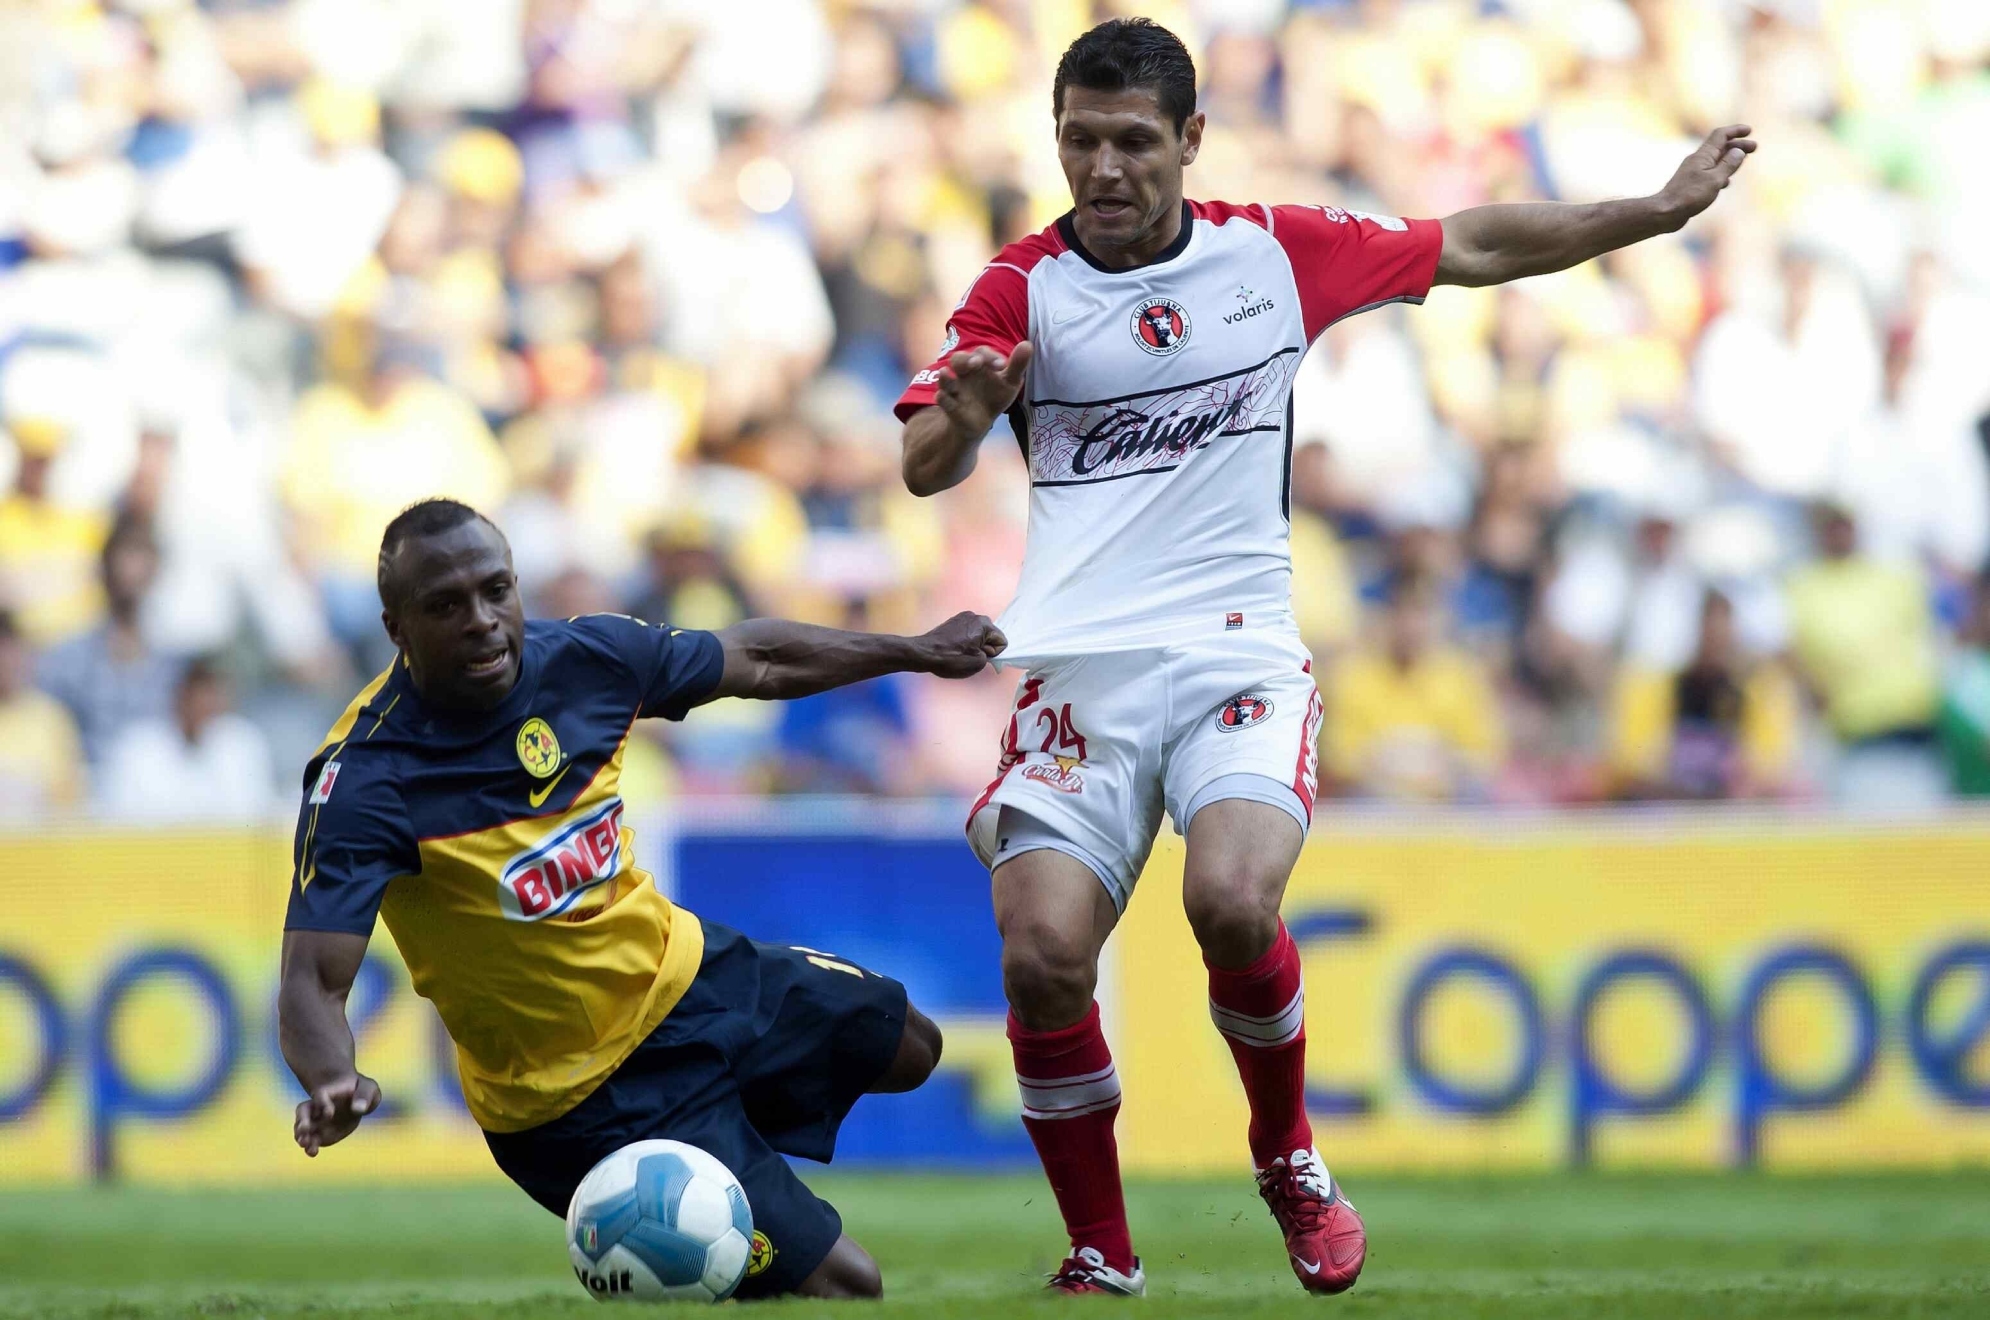 Muere Javier Yacuzzi con 43 años, autor del sexto gol más rápido en México